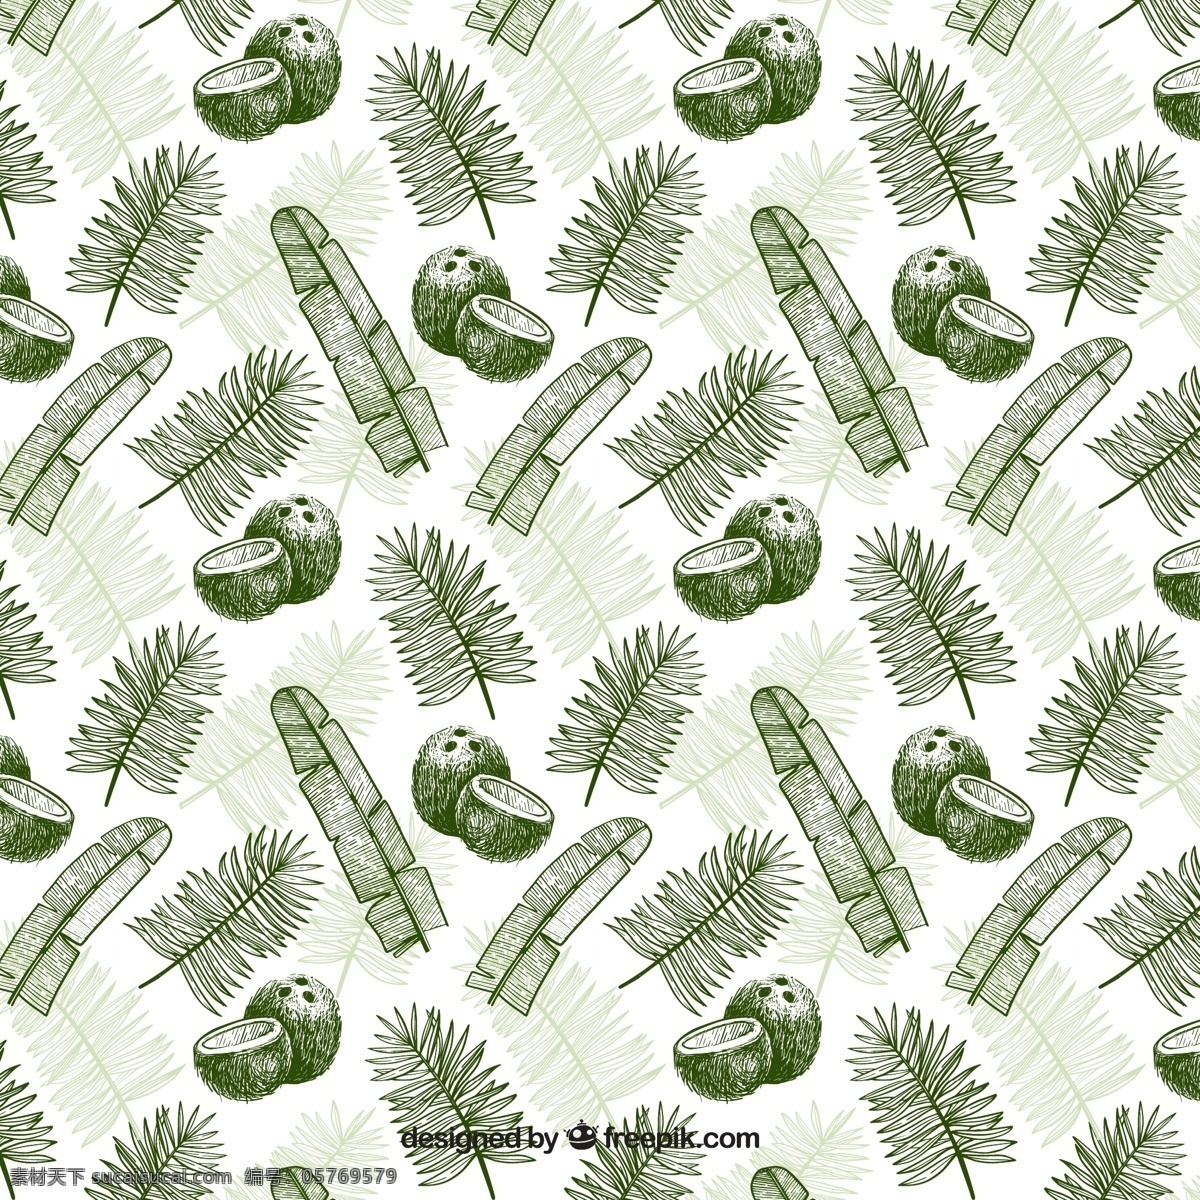 树叶 椰子 背景图片 棕榈树叶 手绘 无缝背景 矢量图 格式 矢量 高清图片